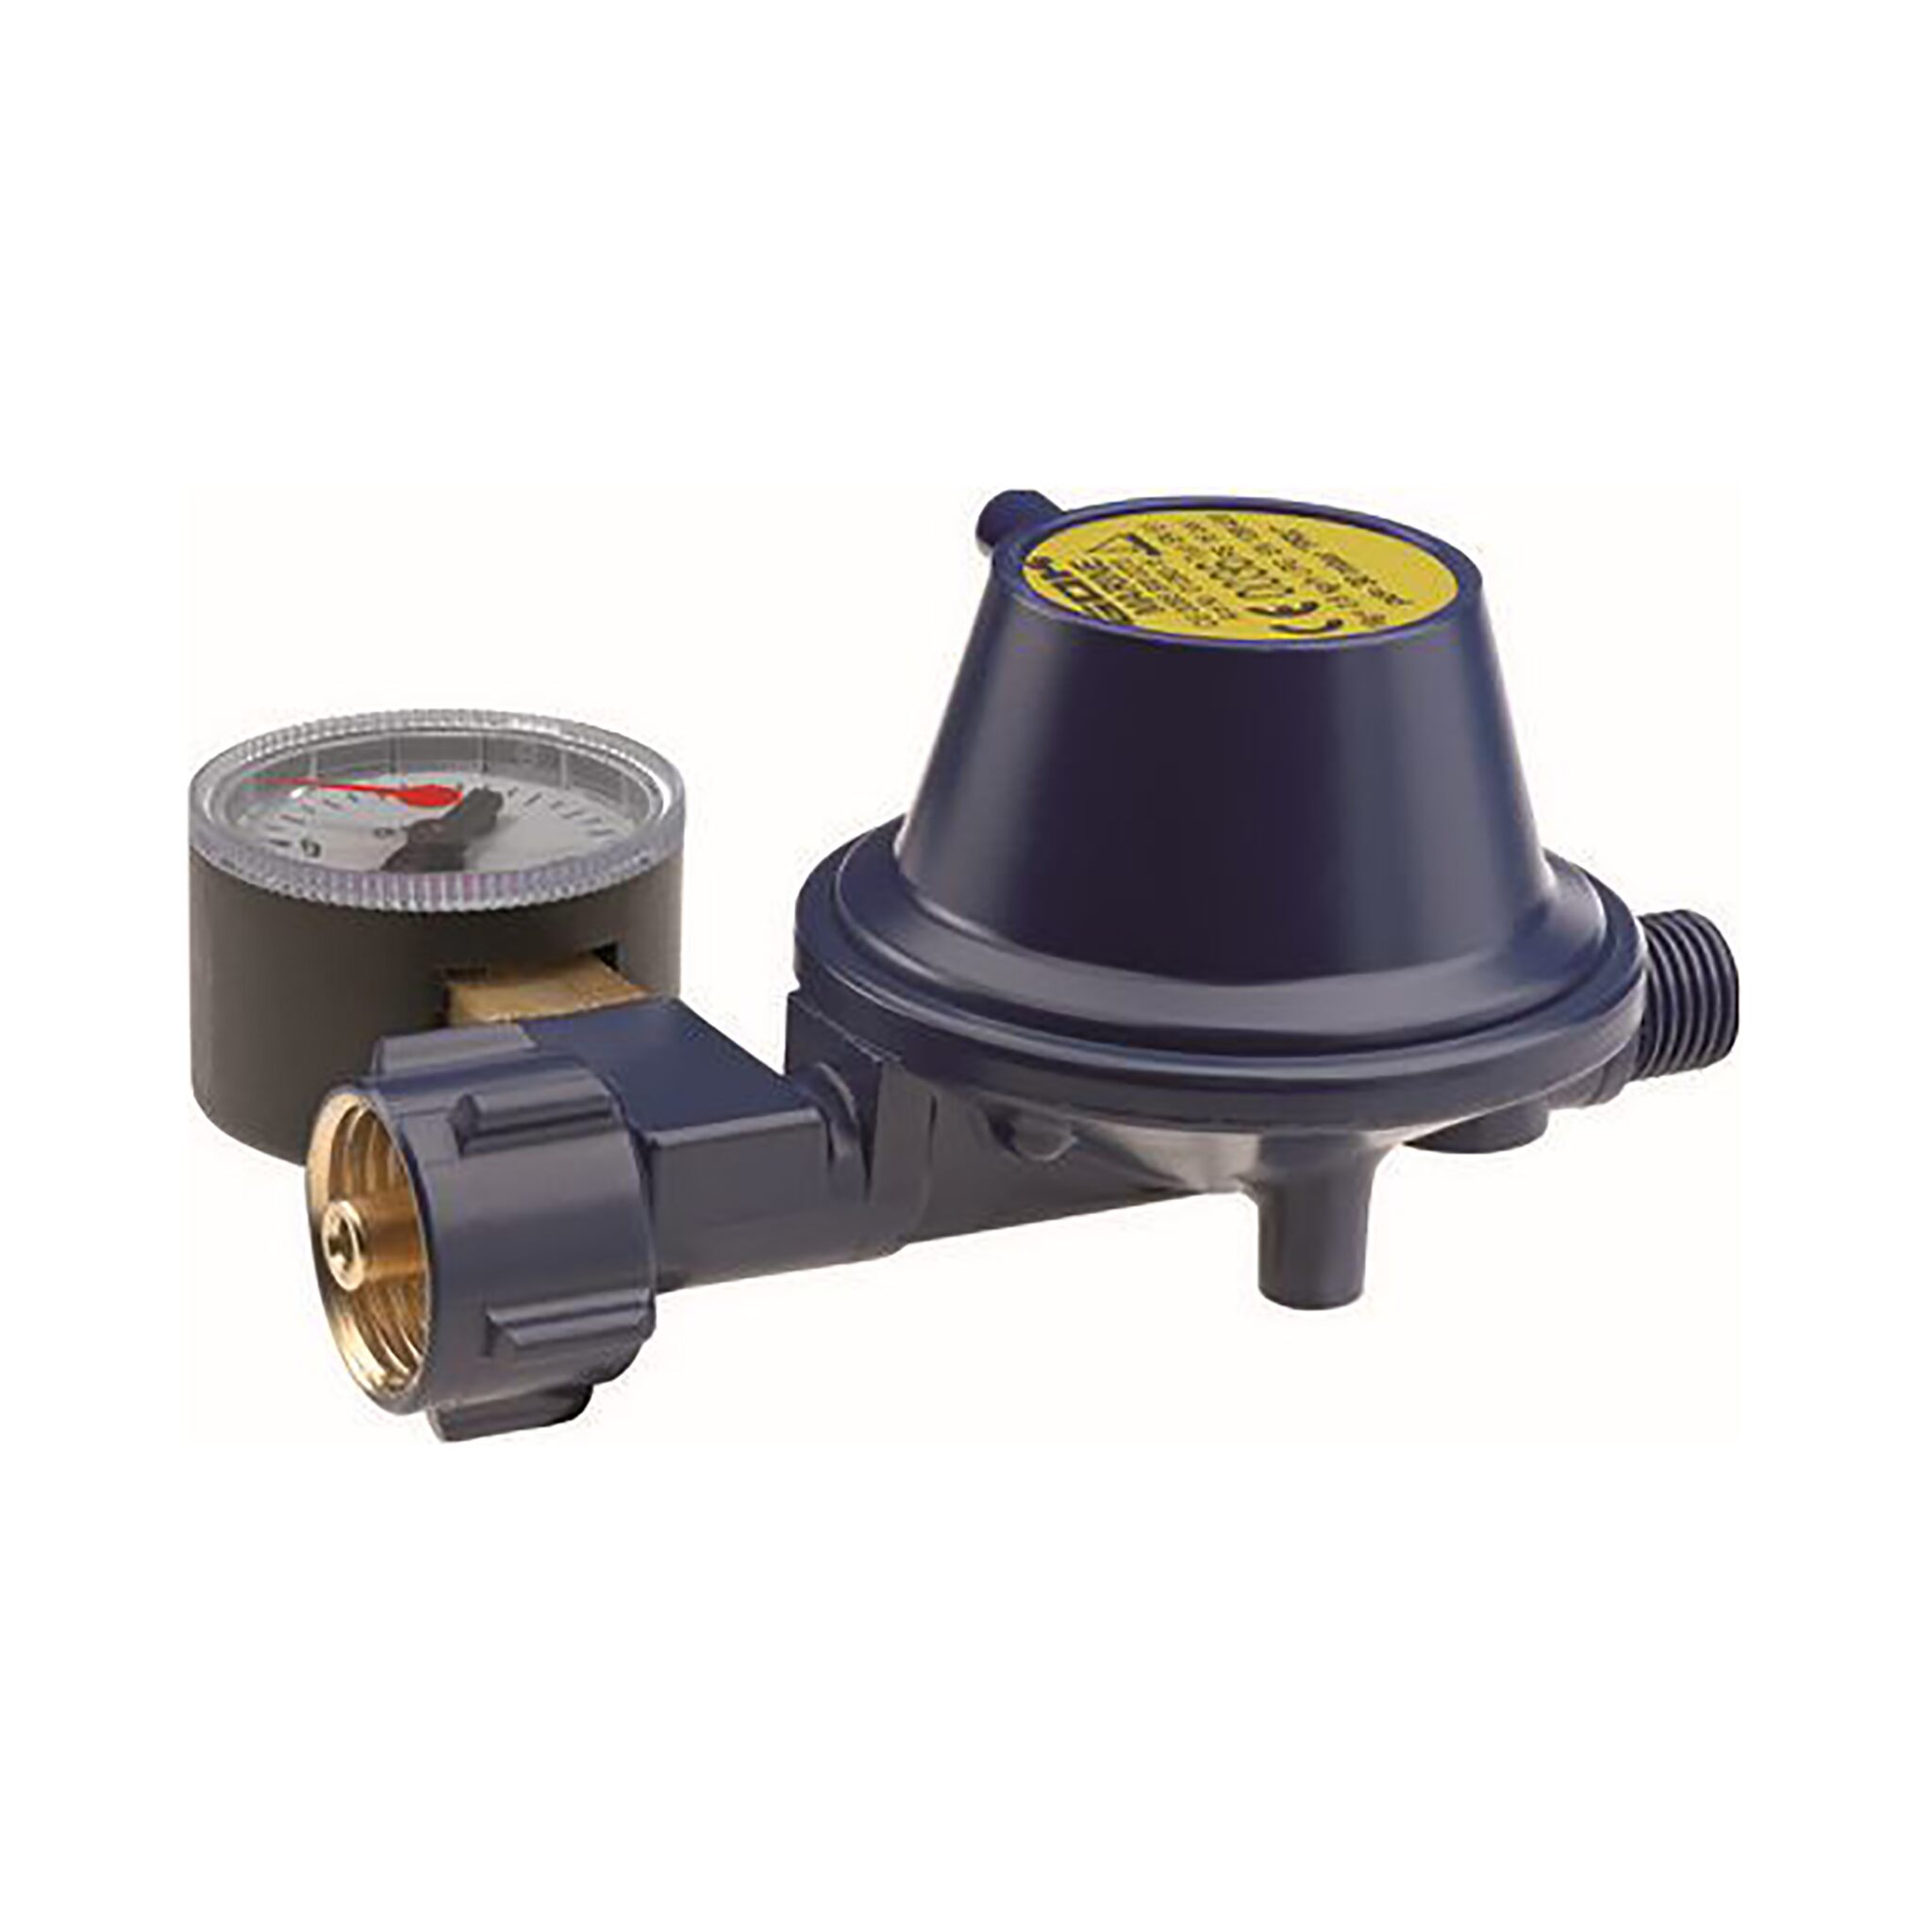 GOK 30mbar low pressure regulator